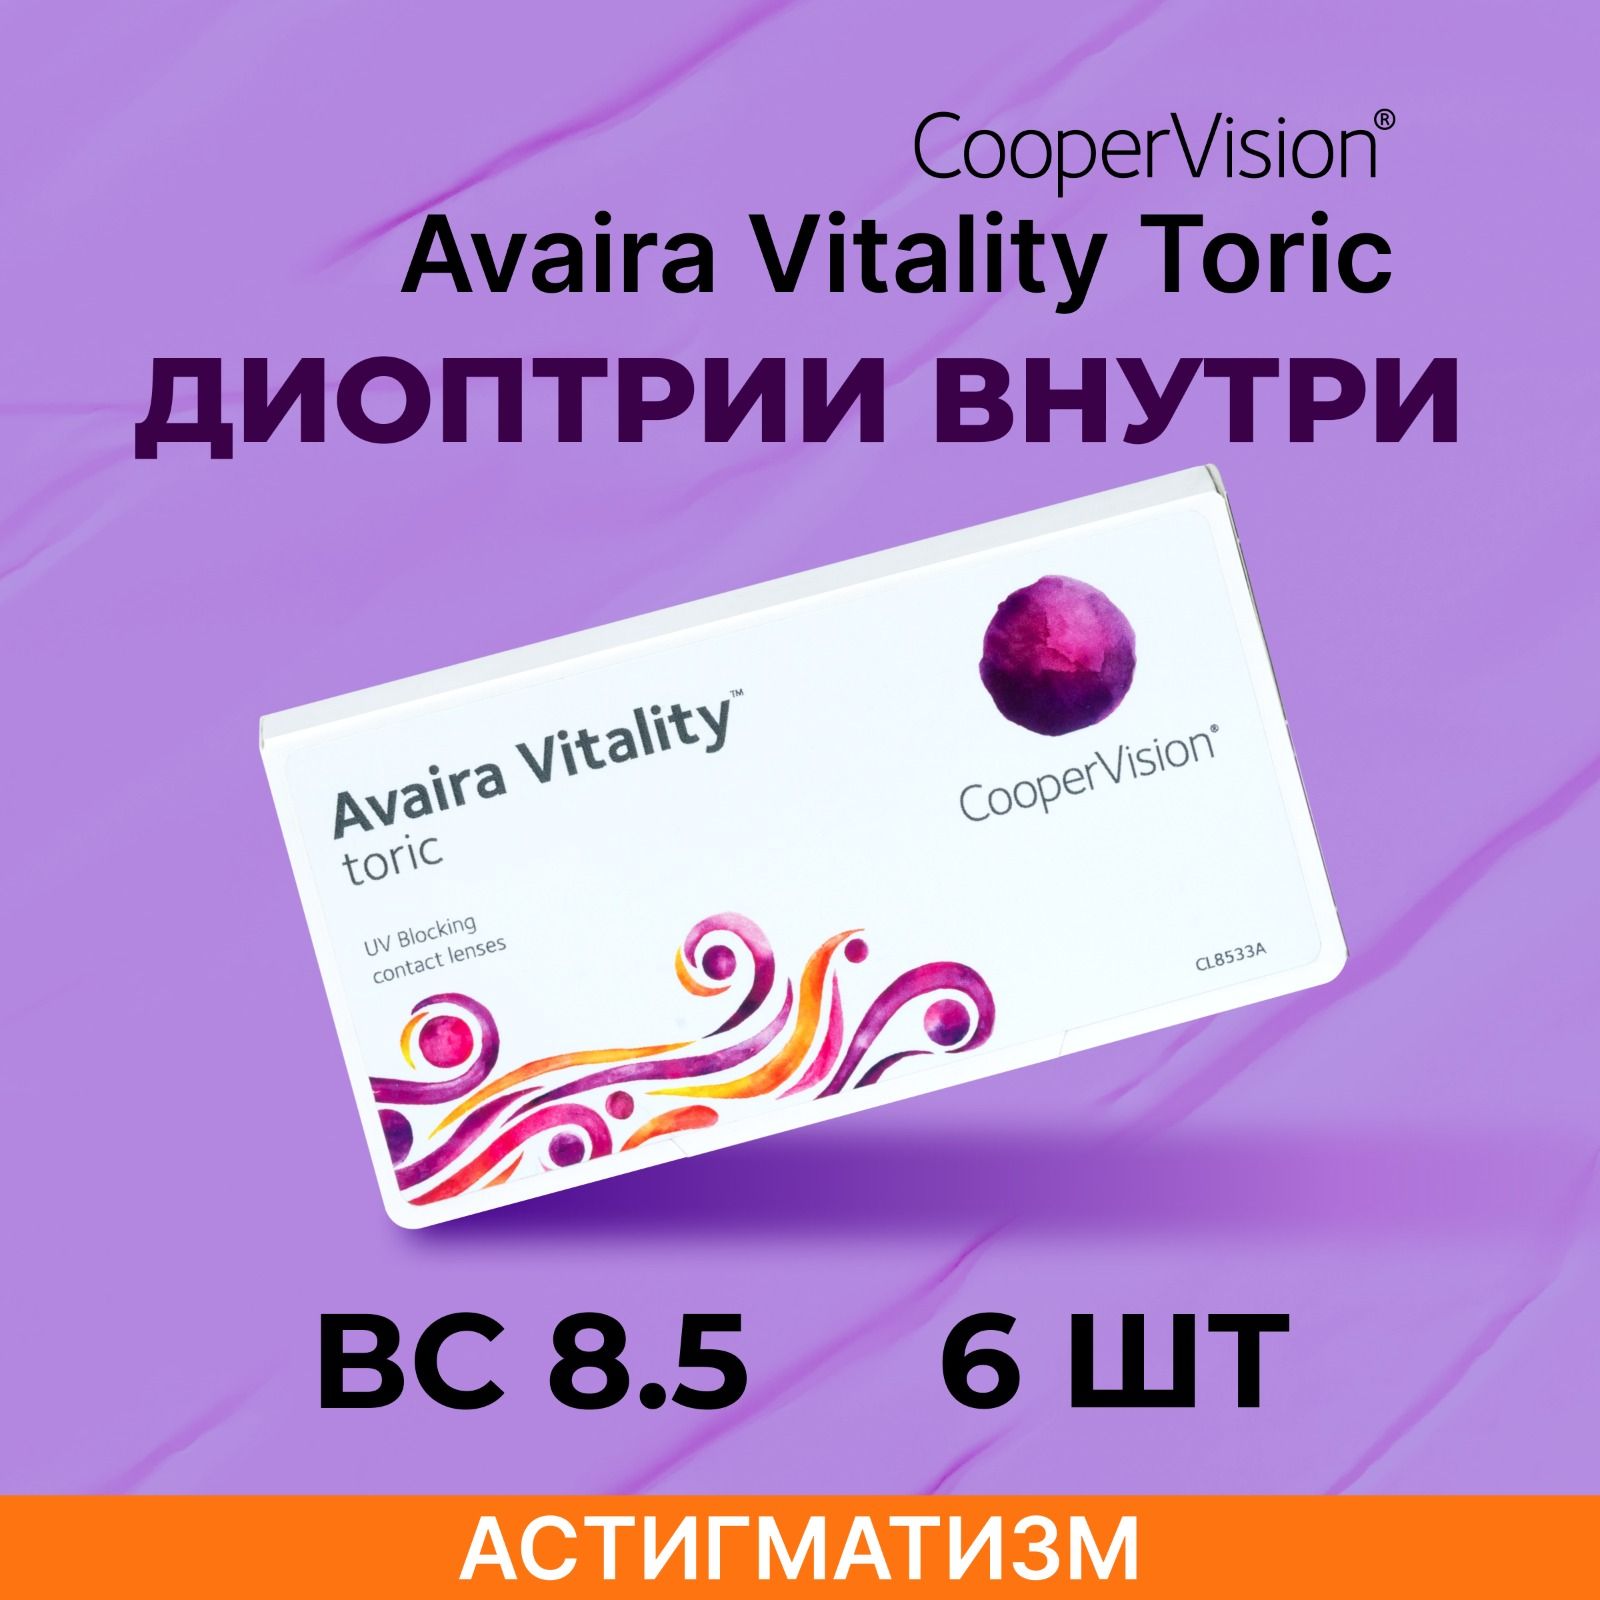 АстигматическиелинзыCooperVisionAvairaVitalitytoric(6линз)Ось40,Оптическаясилацилиндра-1.25-6.00R8.5,двухнедельные,прозрачные